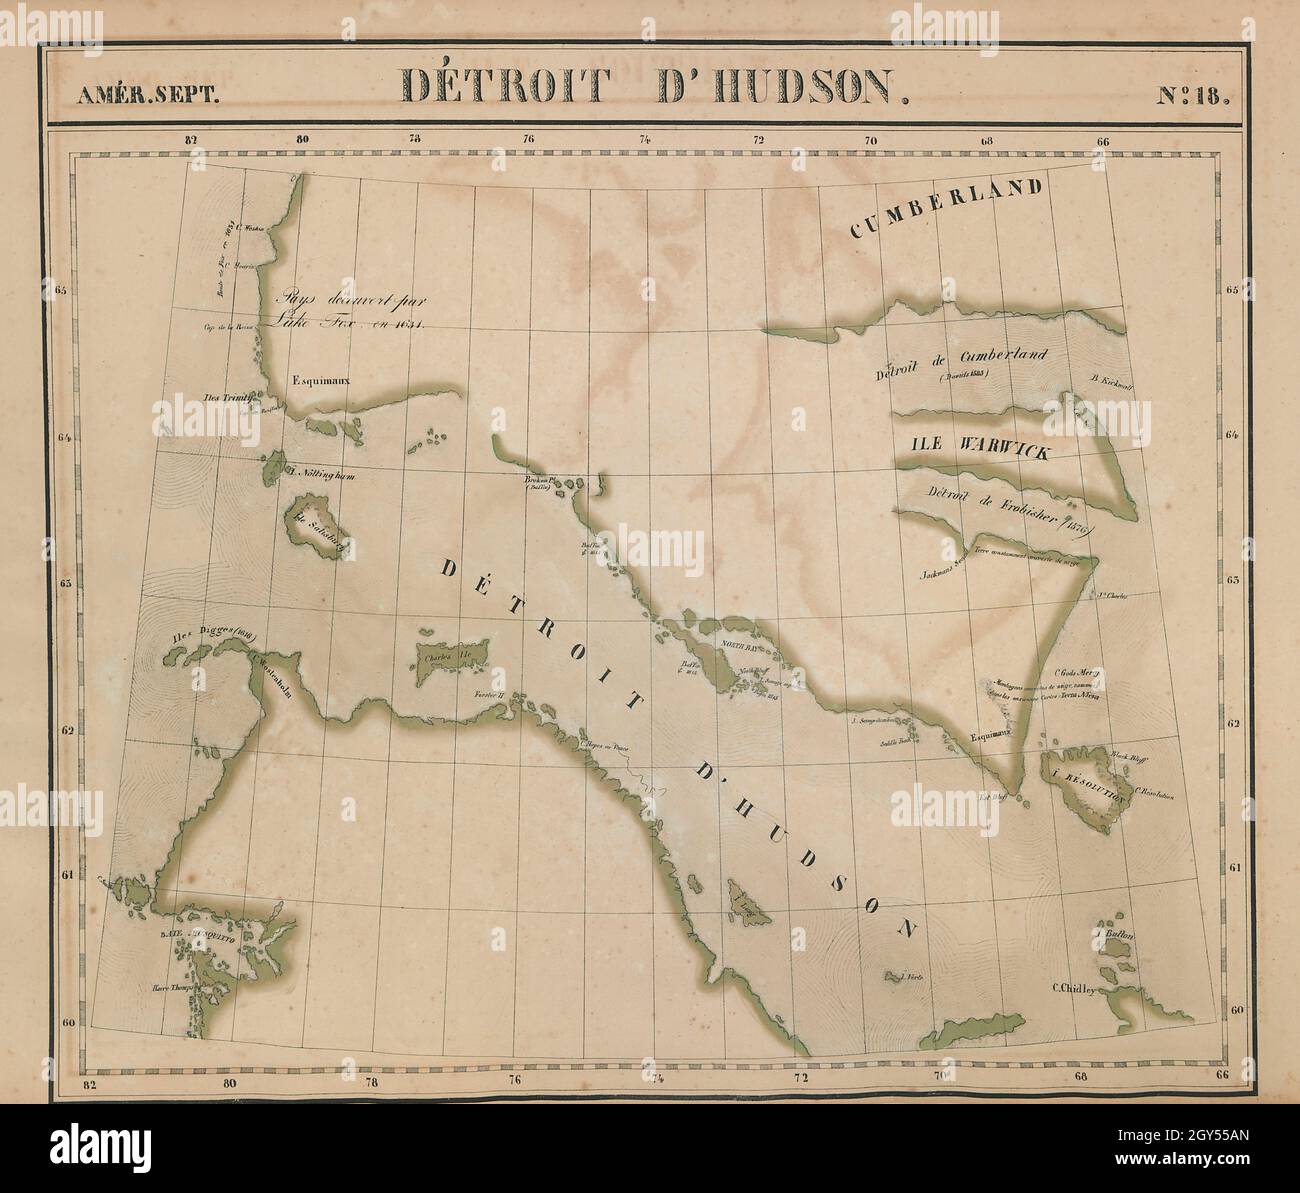 Amér Sep. Détroit d'Hudson Strait #18 Baffin Island Canada VANDERMAELEN 1827 map Stock Photo